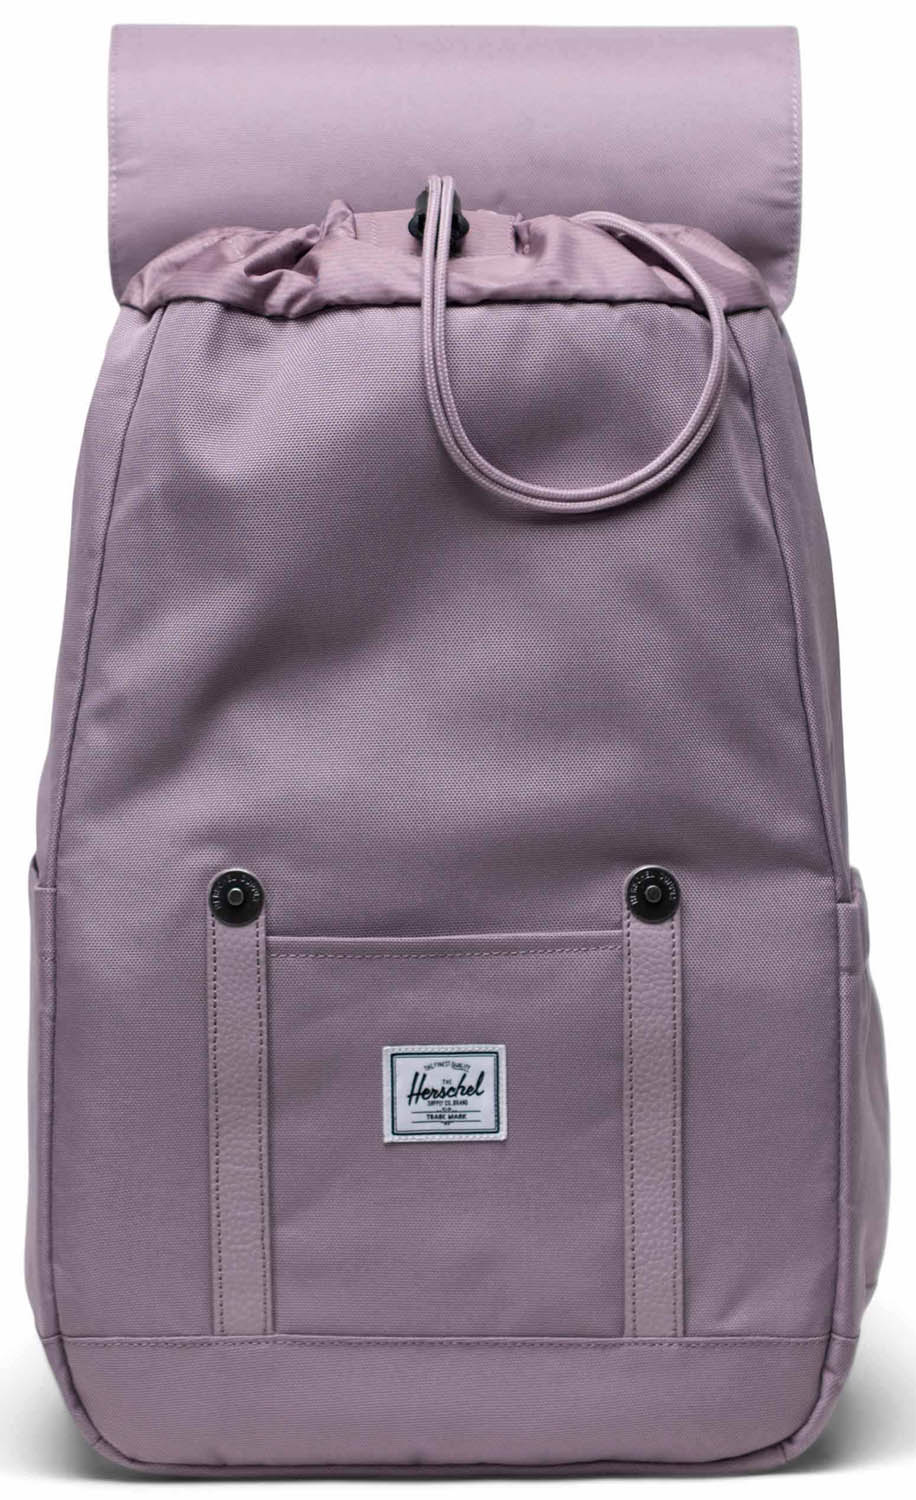 Herschel Retreat Small Backpack - Nirvana